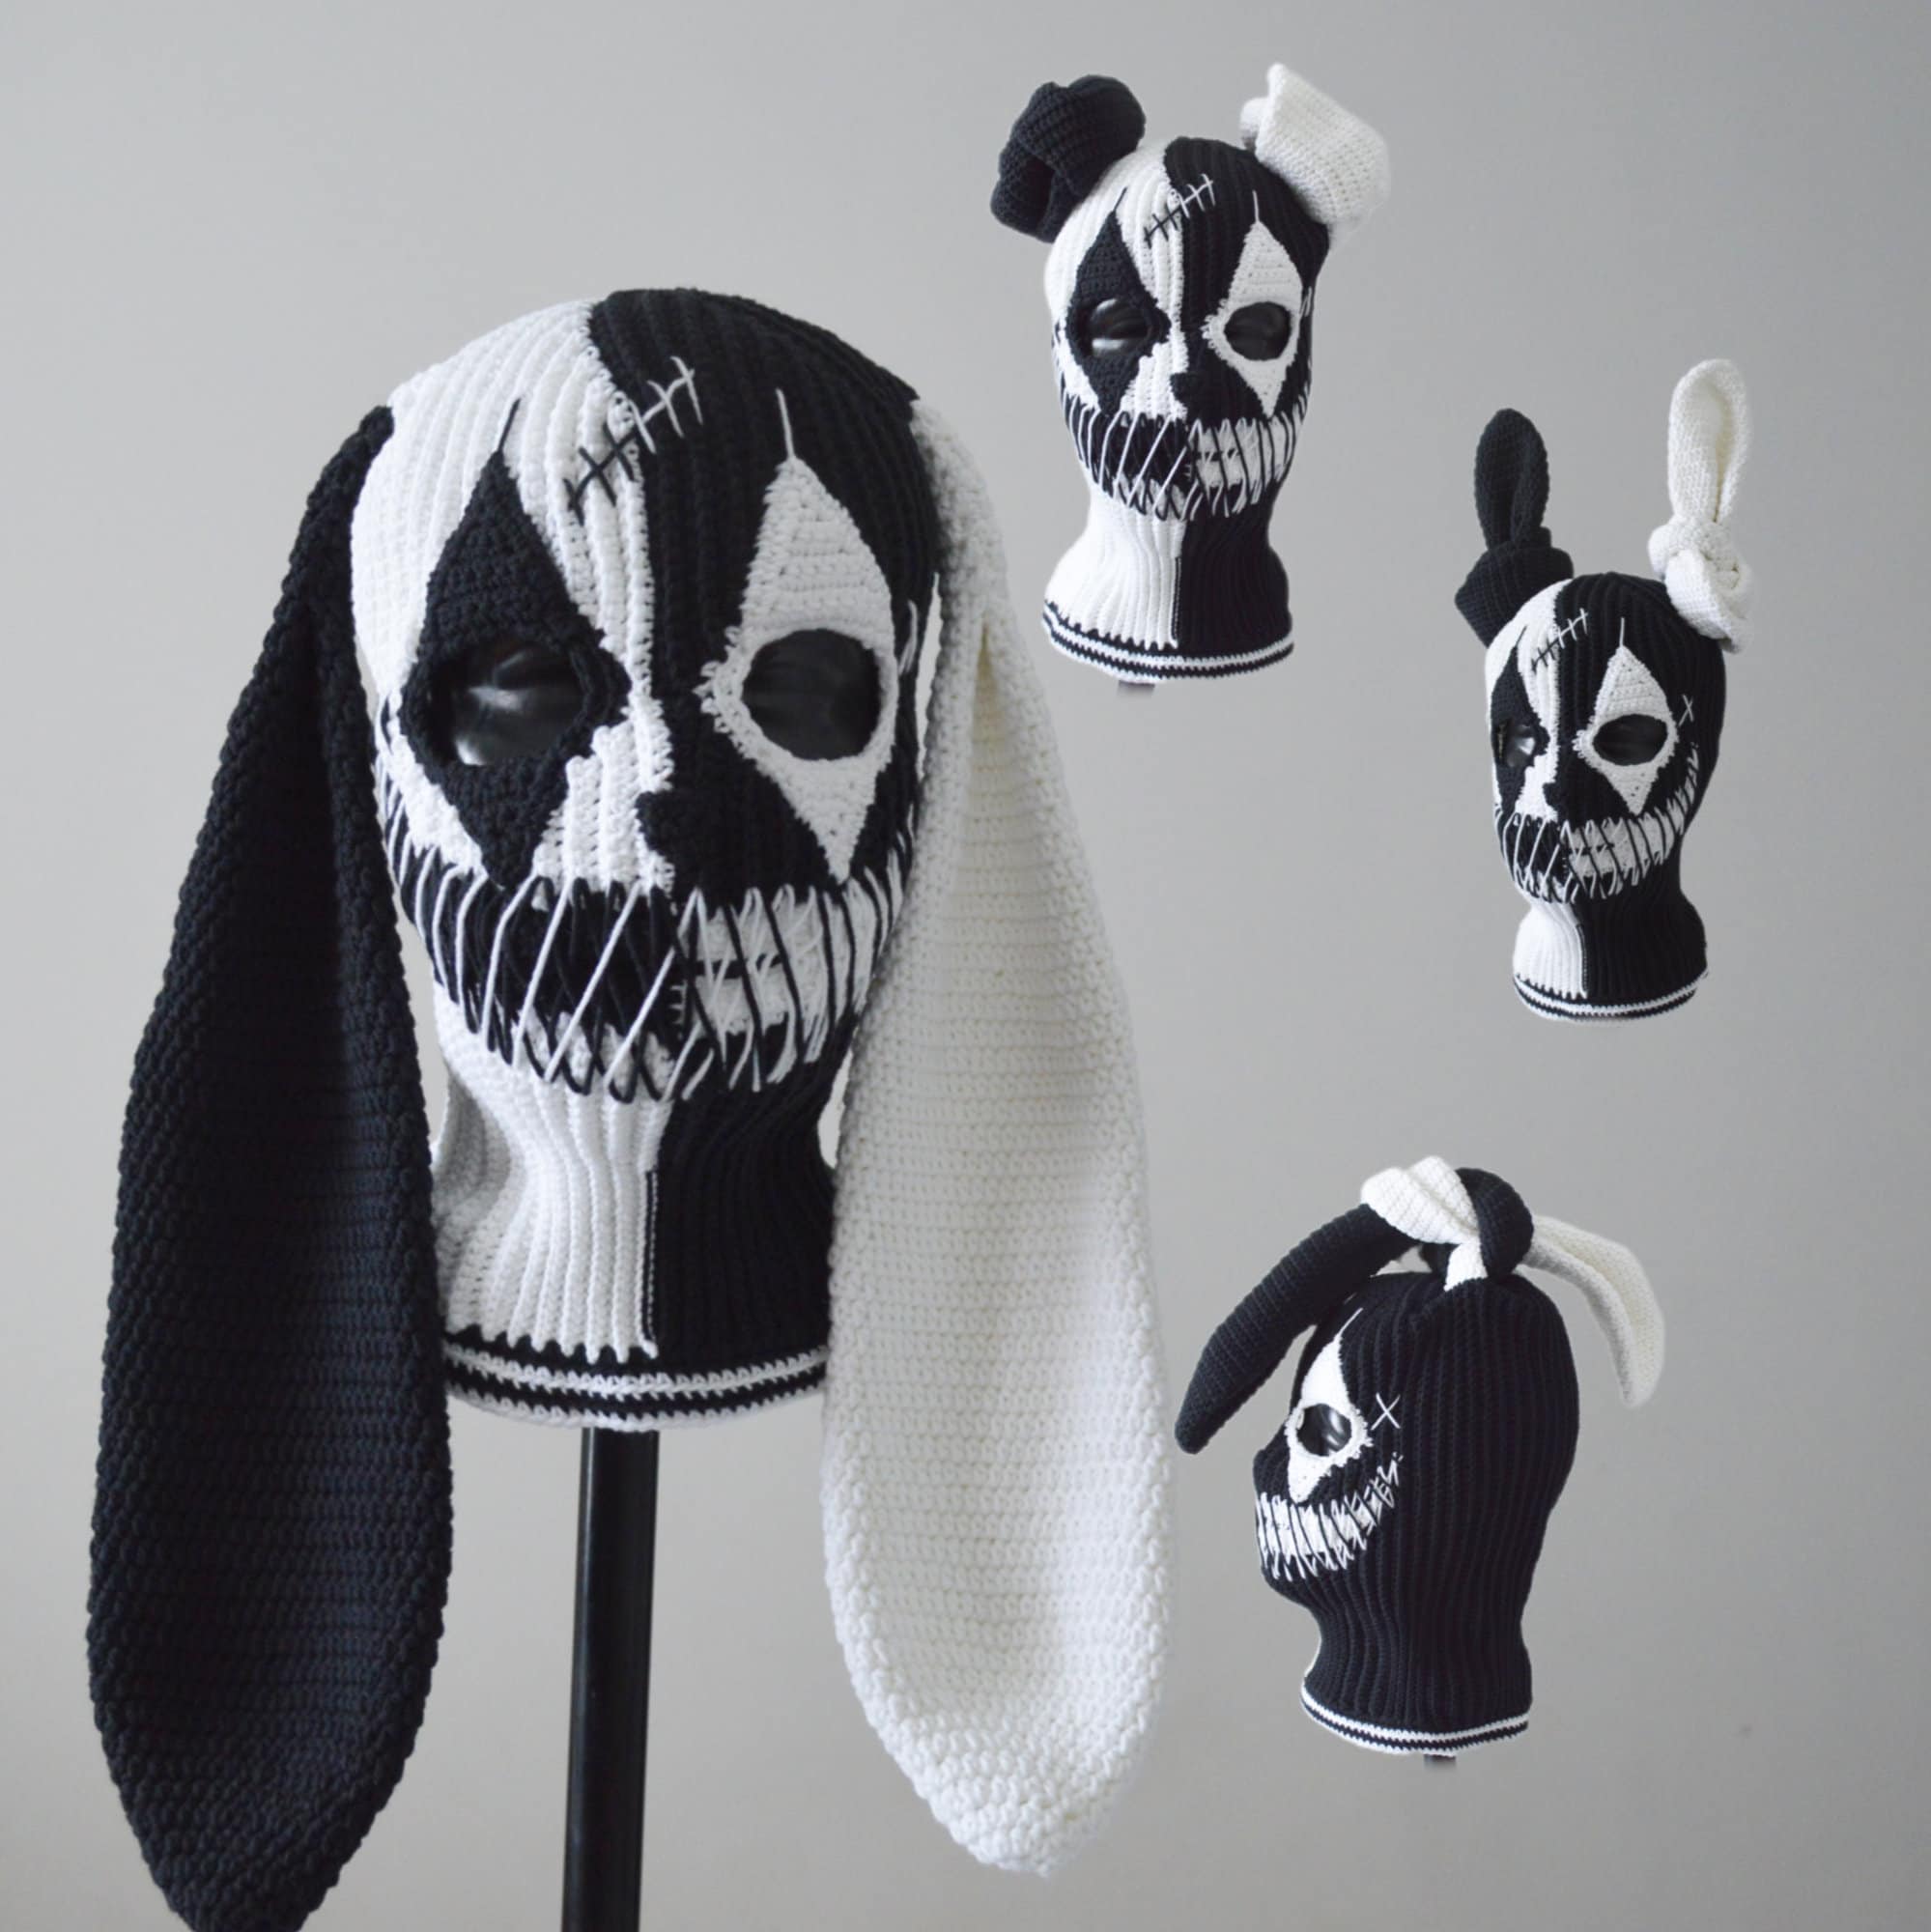 Custom Joker Bunny Ears Ski Mask Black and White Color Crochet